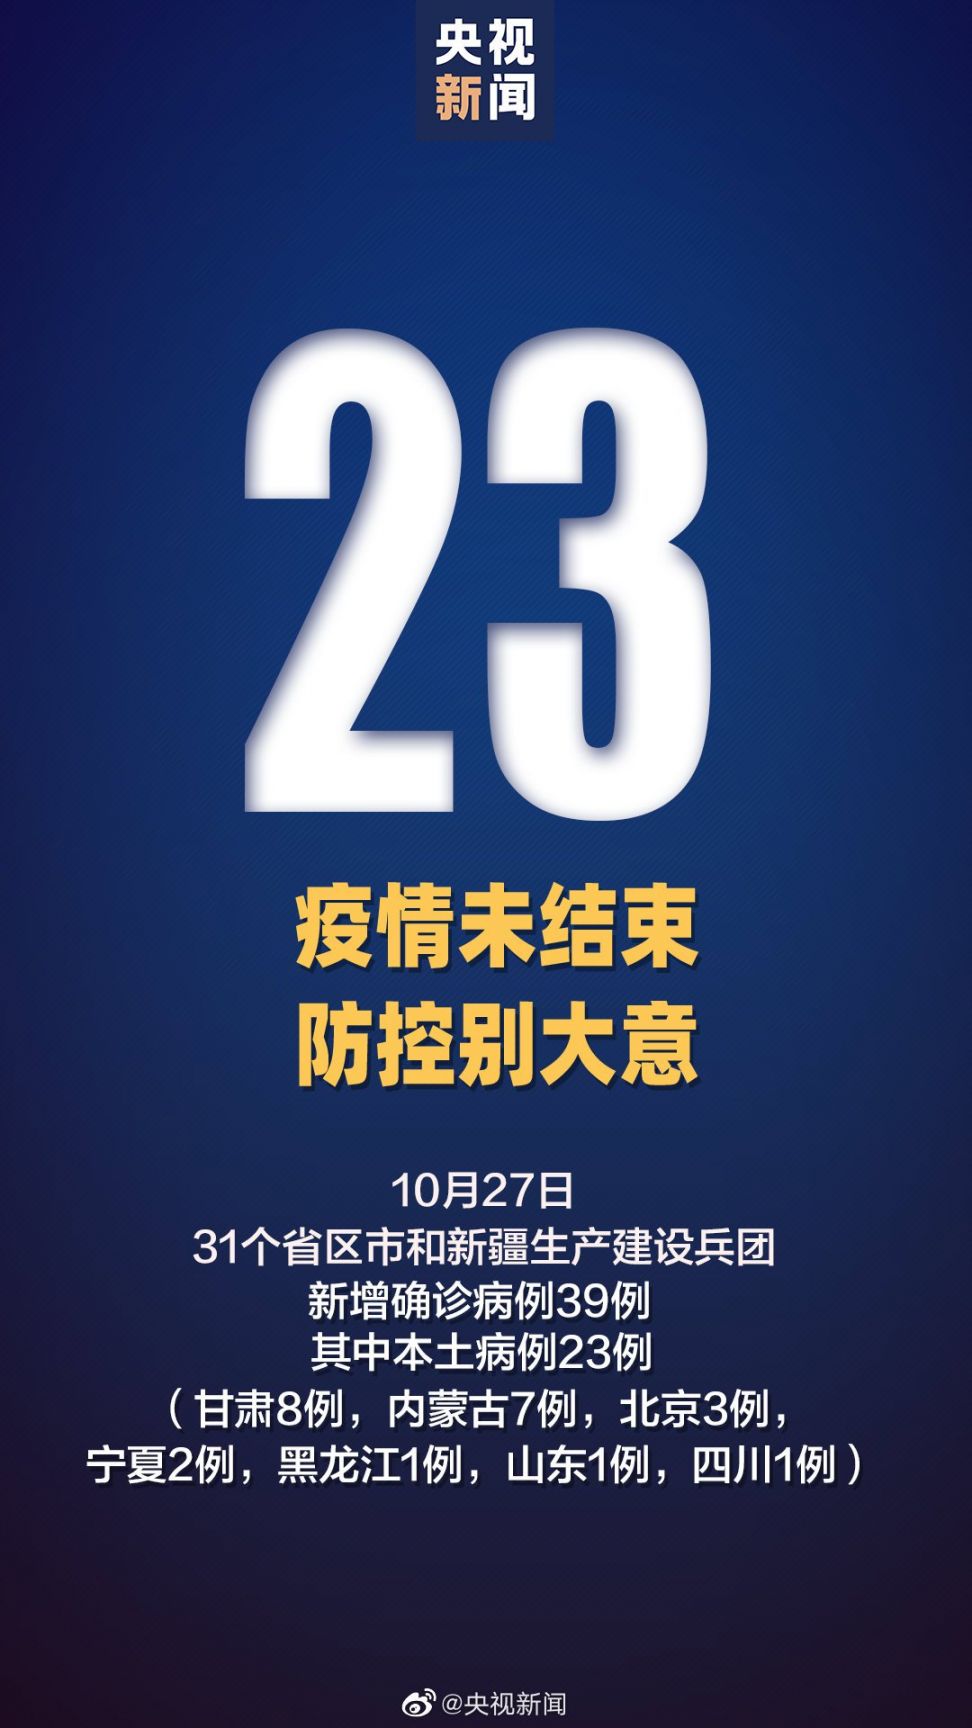 10月27日31省区市新增23例本土确诊病例 北京新增3例